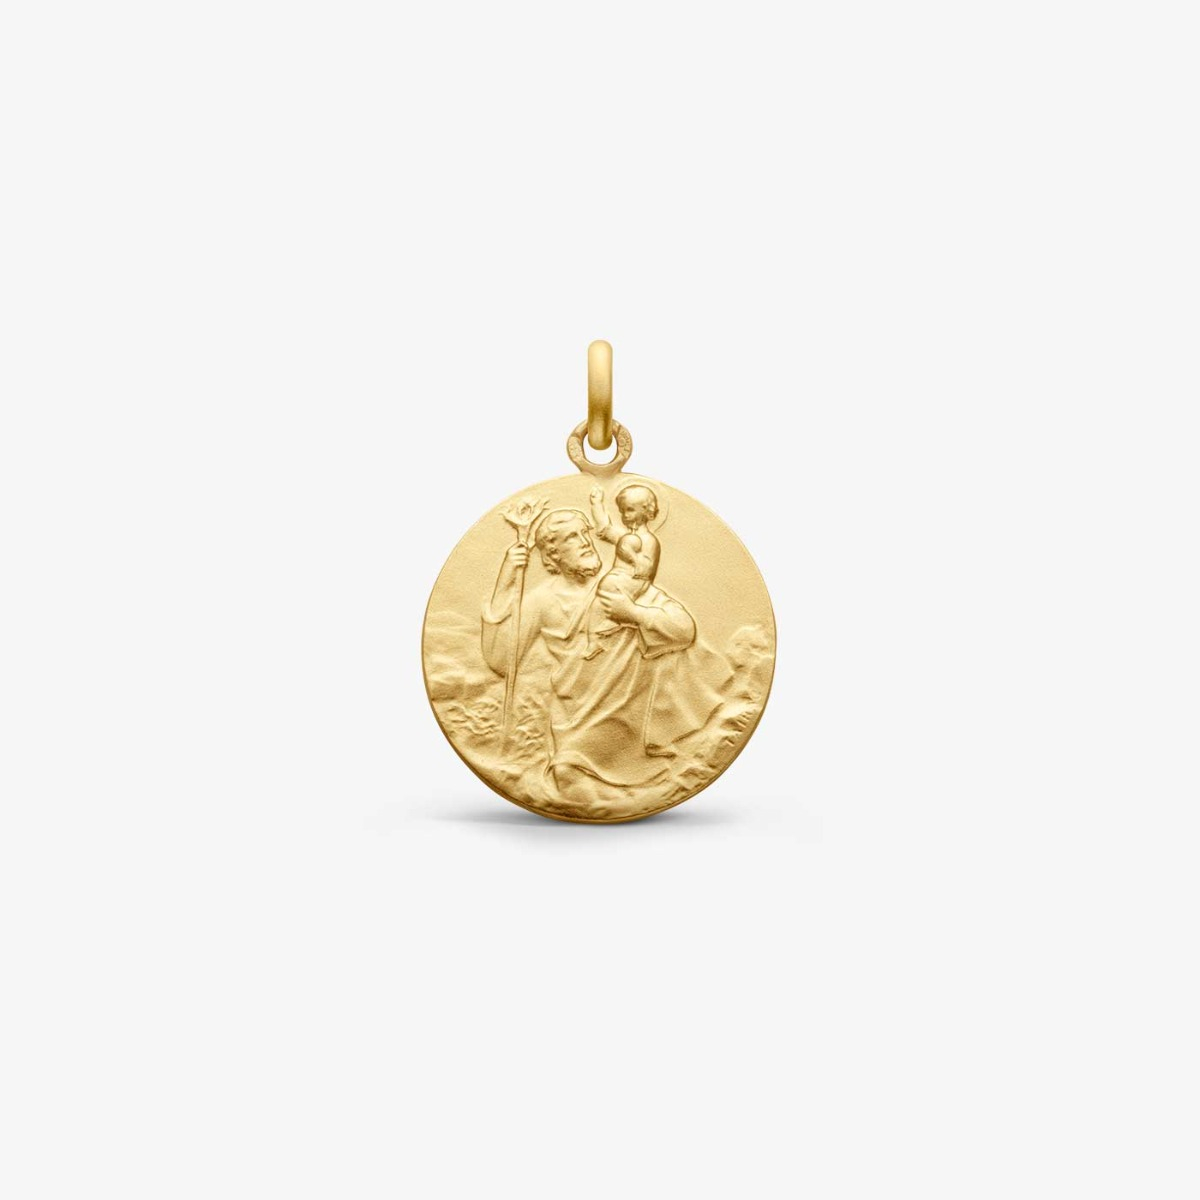 Médaille Saint Christophe - Médaille Arthus Bertrand - Maison la